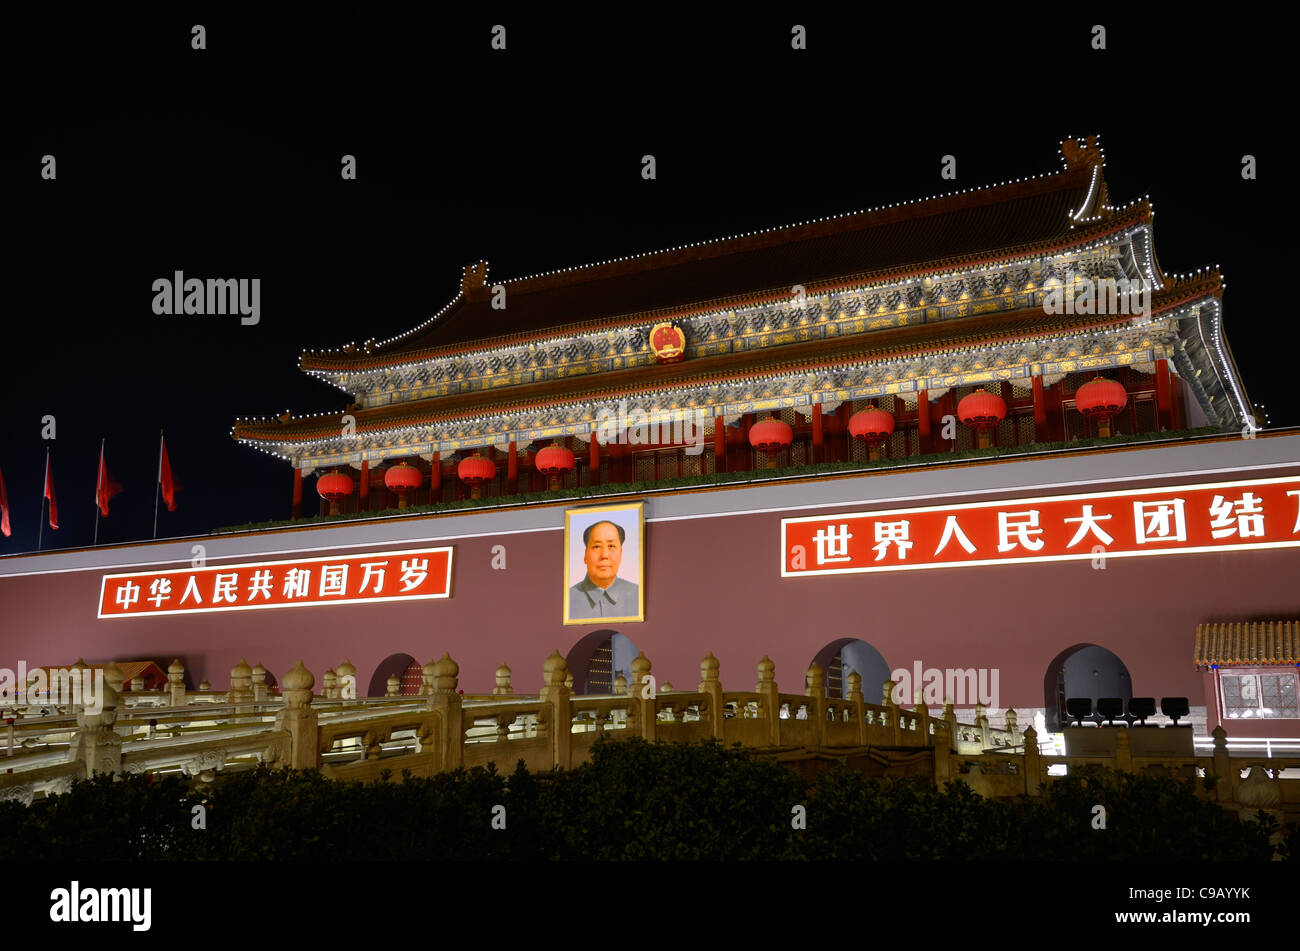 Ponti su Golden acqua fiume di Tiananmen Porta della Pace Celeste ingresso alla città imperiale di Pechino Repubblica Popolare Cinese Foto Stock